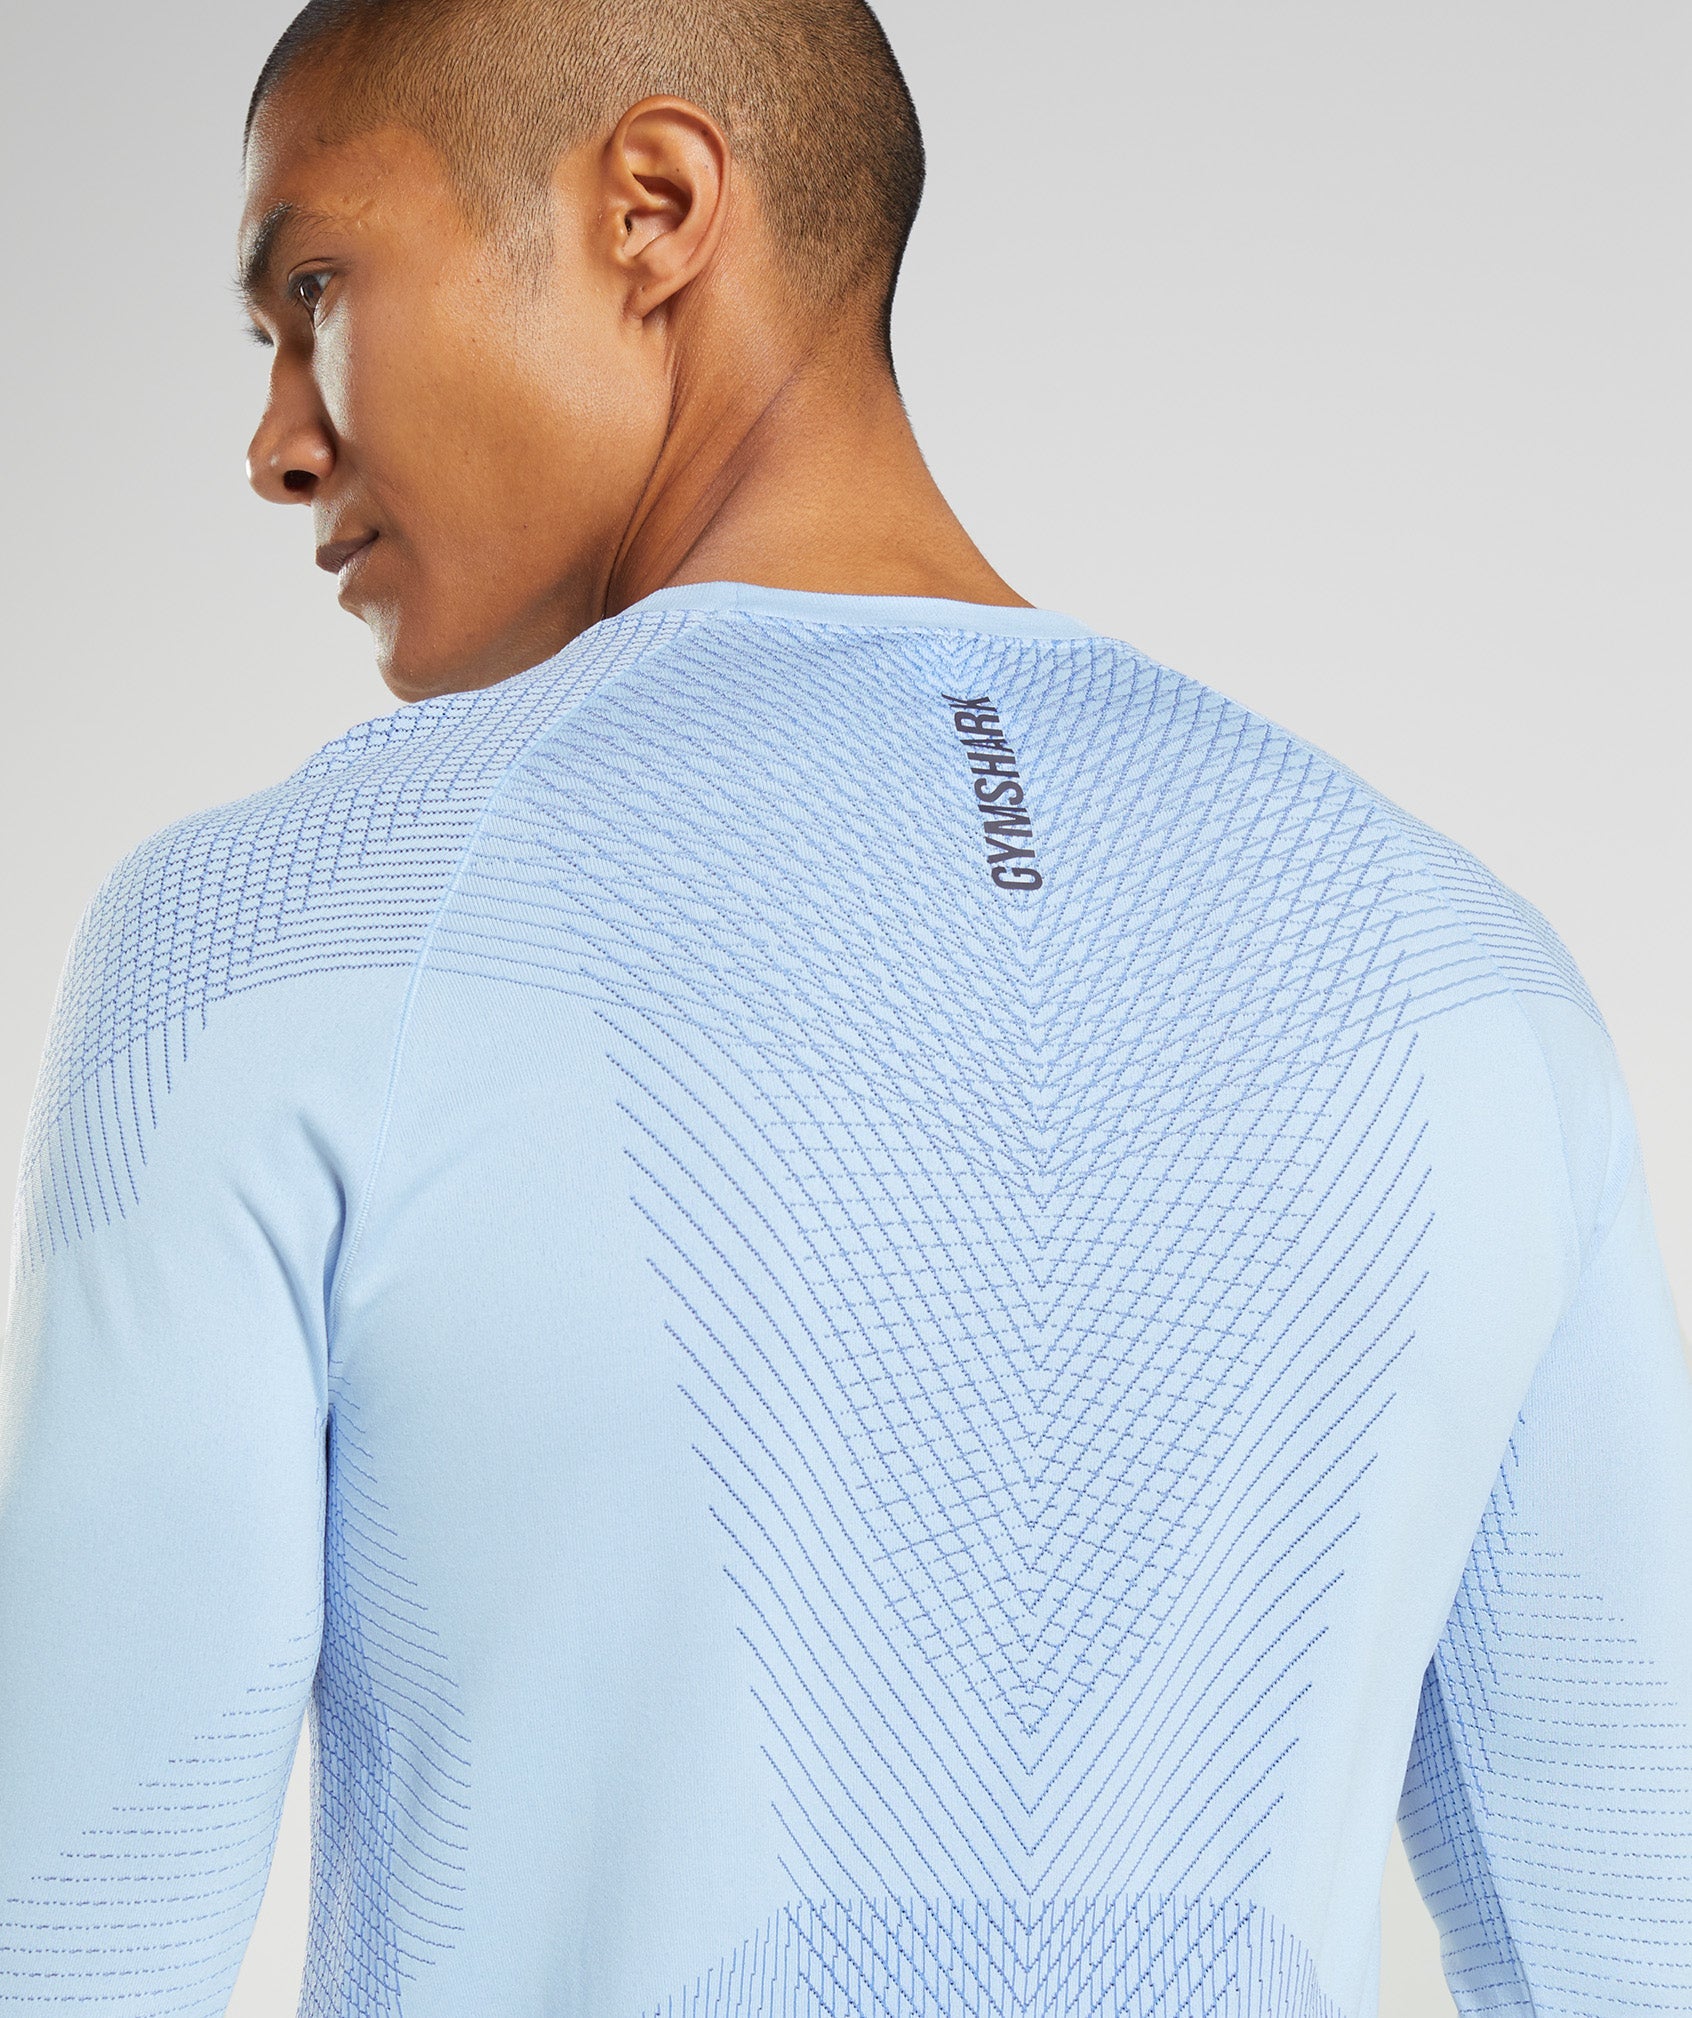 Apex Seamless Long Sleeve T-Shirt in Linen Blue/Court Blue - view 5